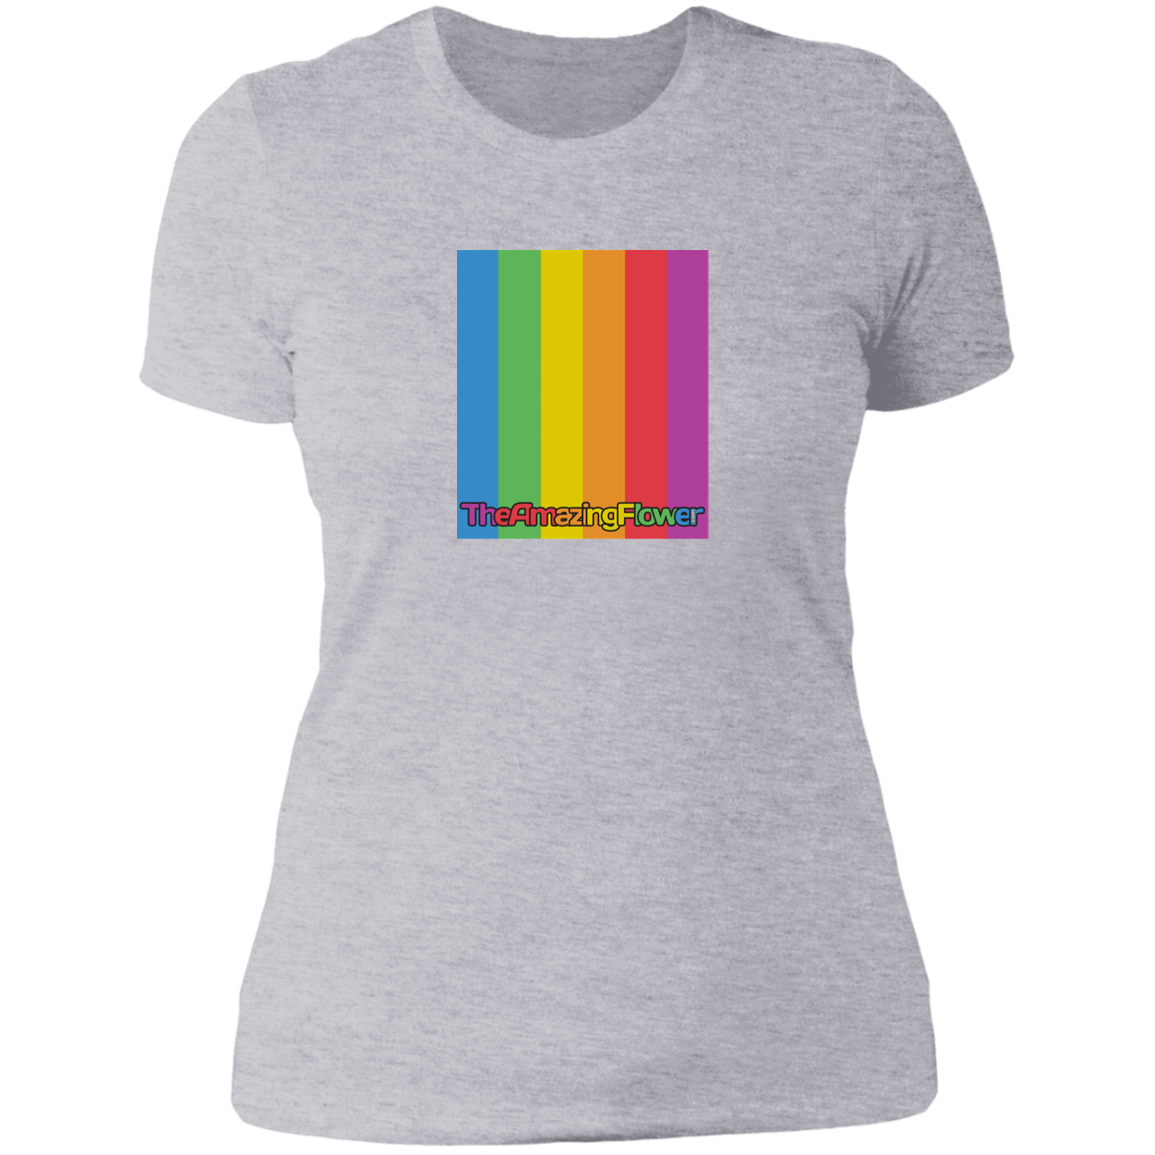 TheAmazingFlower.com Rainbow Logo Women's Heather Gray T-Shirt